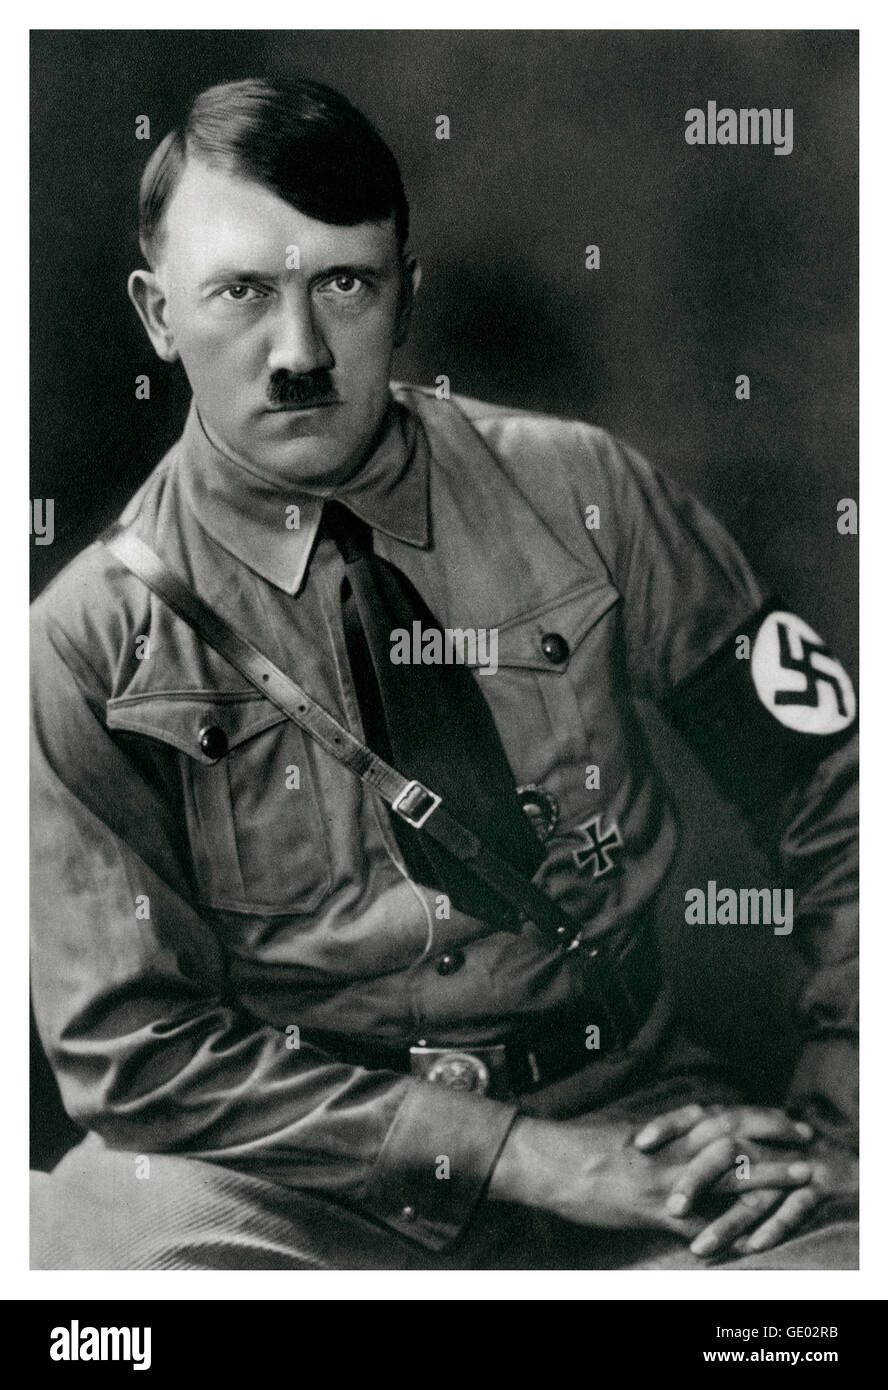 ADOLF HITLER STURMABTEILUNG UNIFORM 1930's informale B&W Ritratto di Adolf Hitler con fascia da braccio di svastica e distintivo della croce di ferro militare tedesca in uniforme Sturmabteilung (camicie marroni) Foto Stock